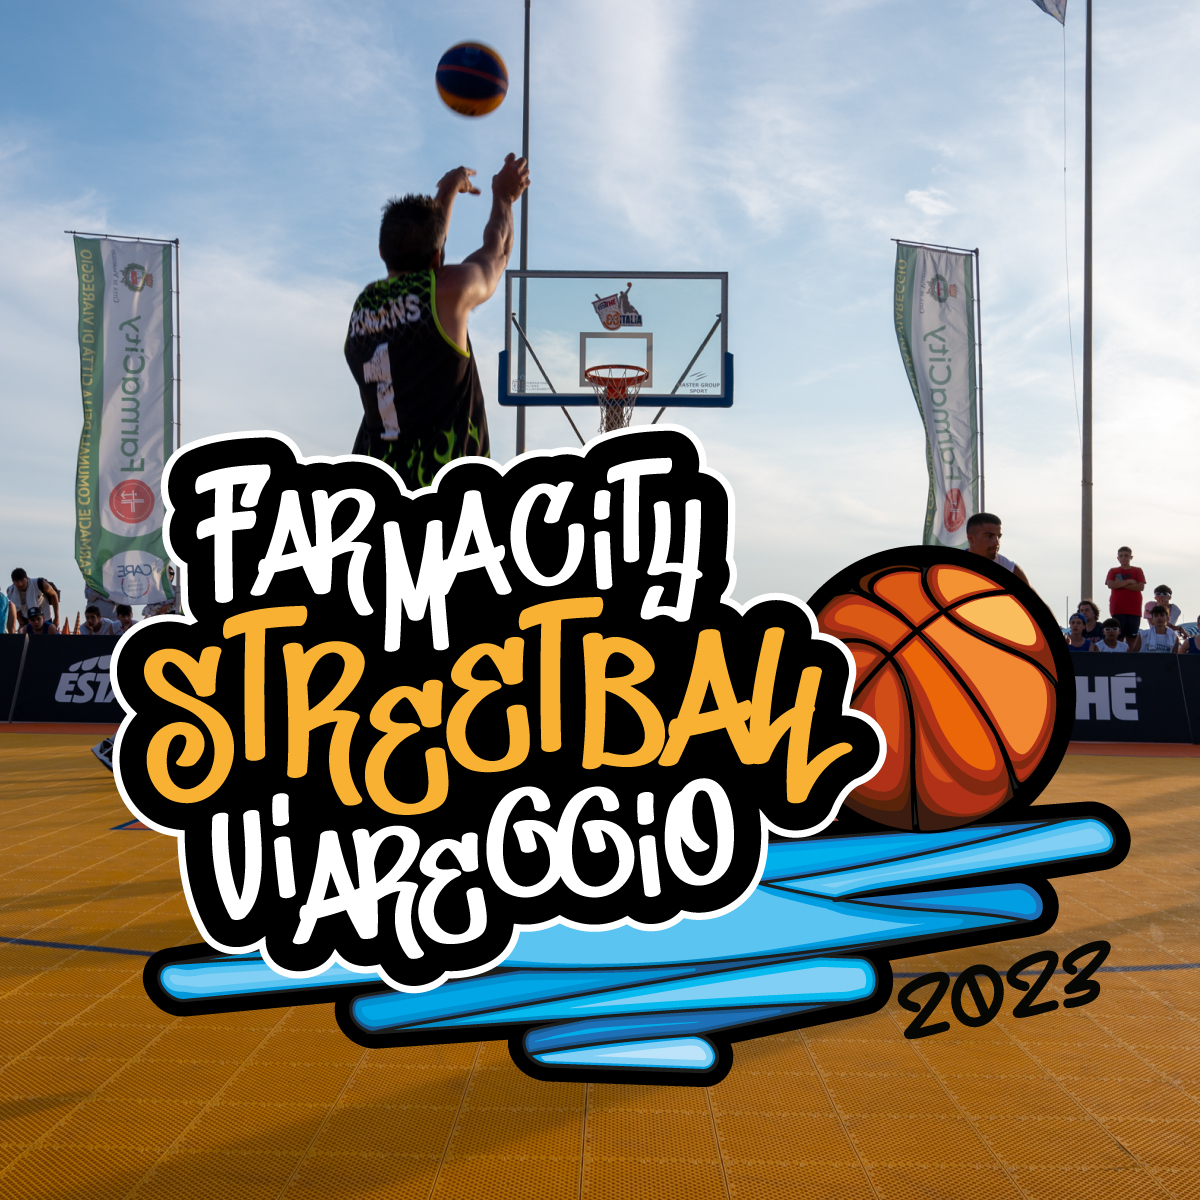 Grande successo per la terza edizione del FarmaCity Streetball Viareggio